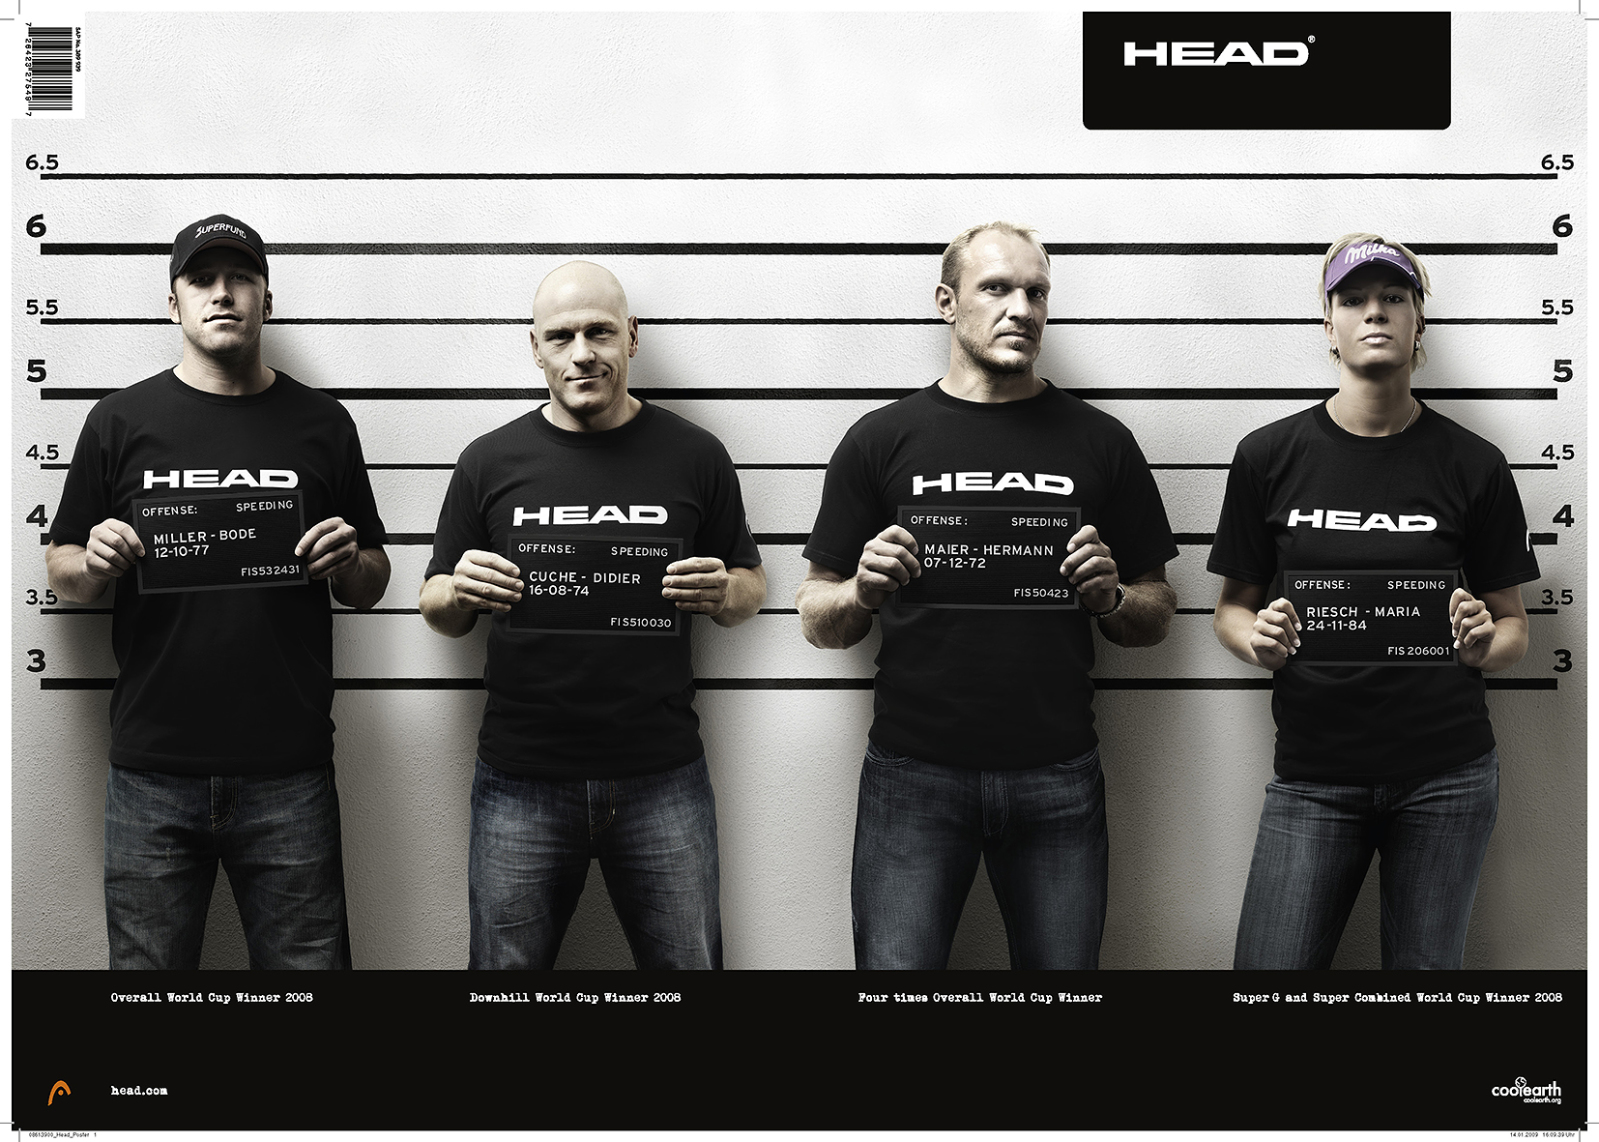 head-team-poster-300ppi.jpg